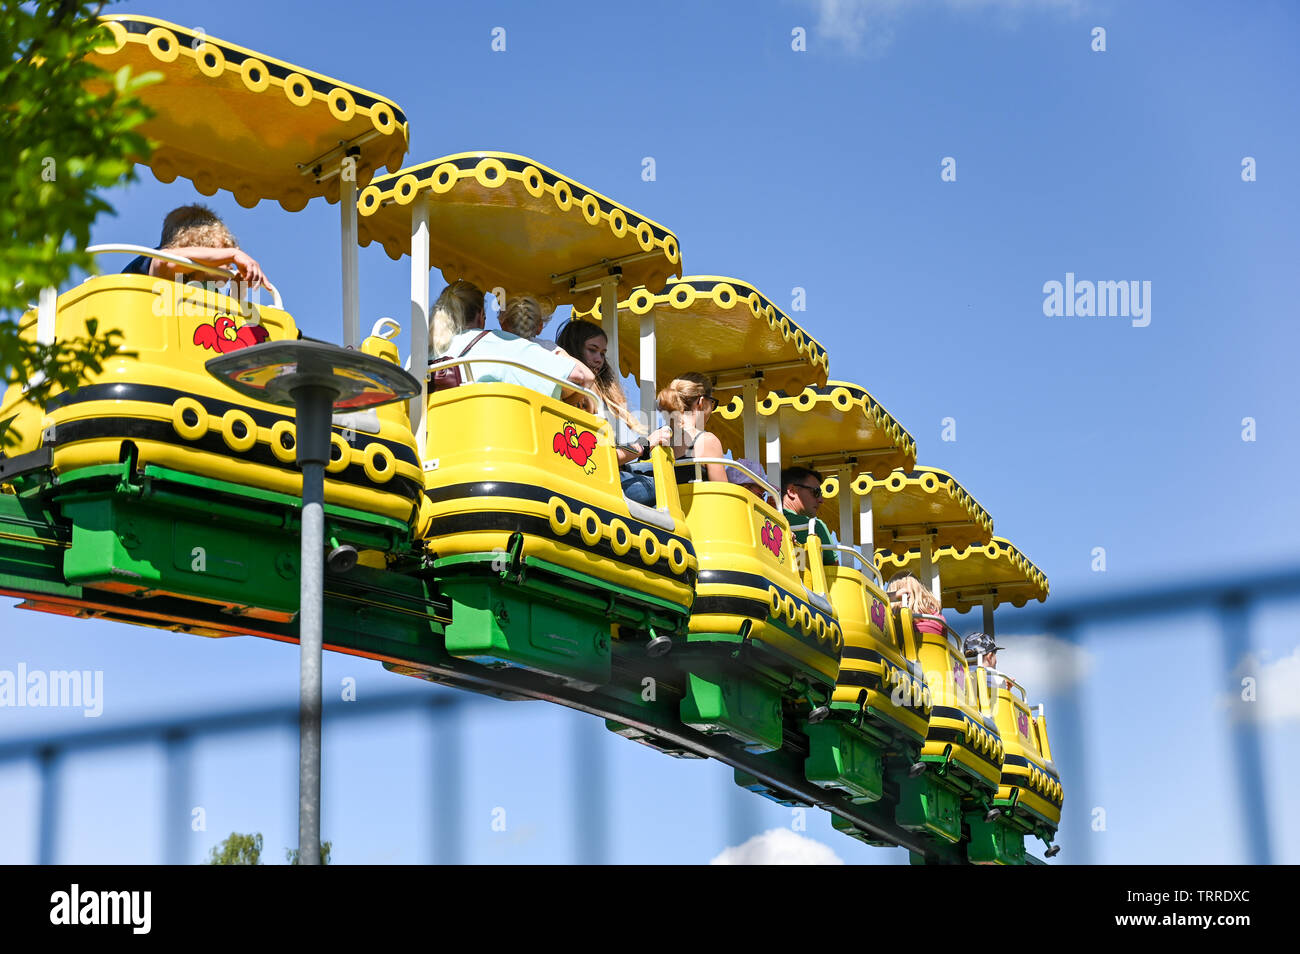 En monorraíl en Legoland Billund, Dinamarca. Este parque temático familiar  abrió sus puertas en 1968 y está integrada por 65 millones de ladrillos LEGO  Fotografía de stock - Alamy